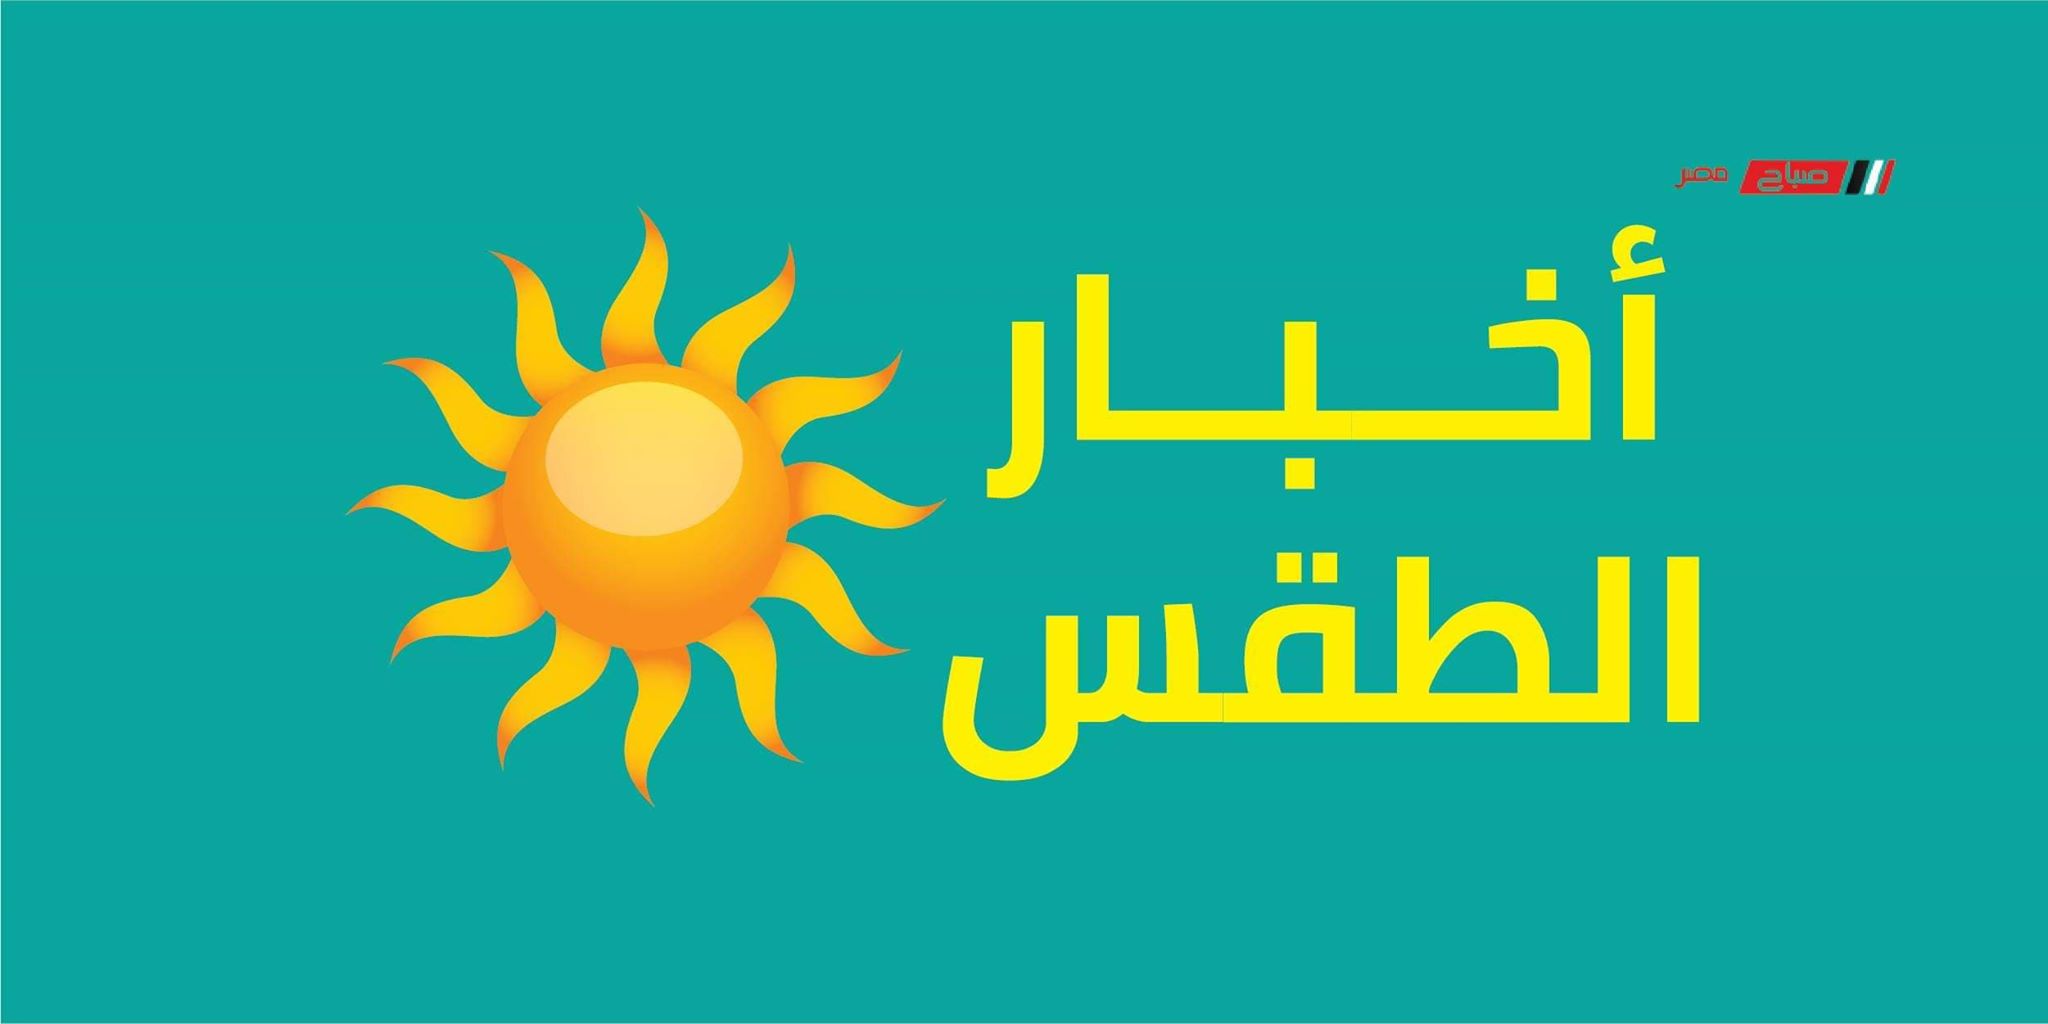 طقس مشمس في أغلب الاوقات على القاهرة اليوم الإثنين 18_5_2020